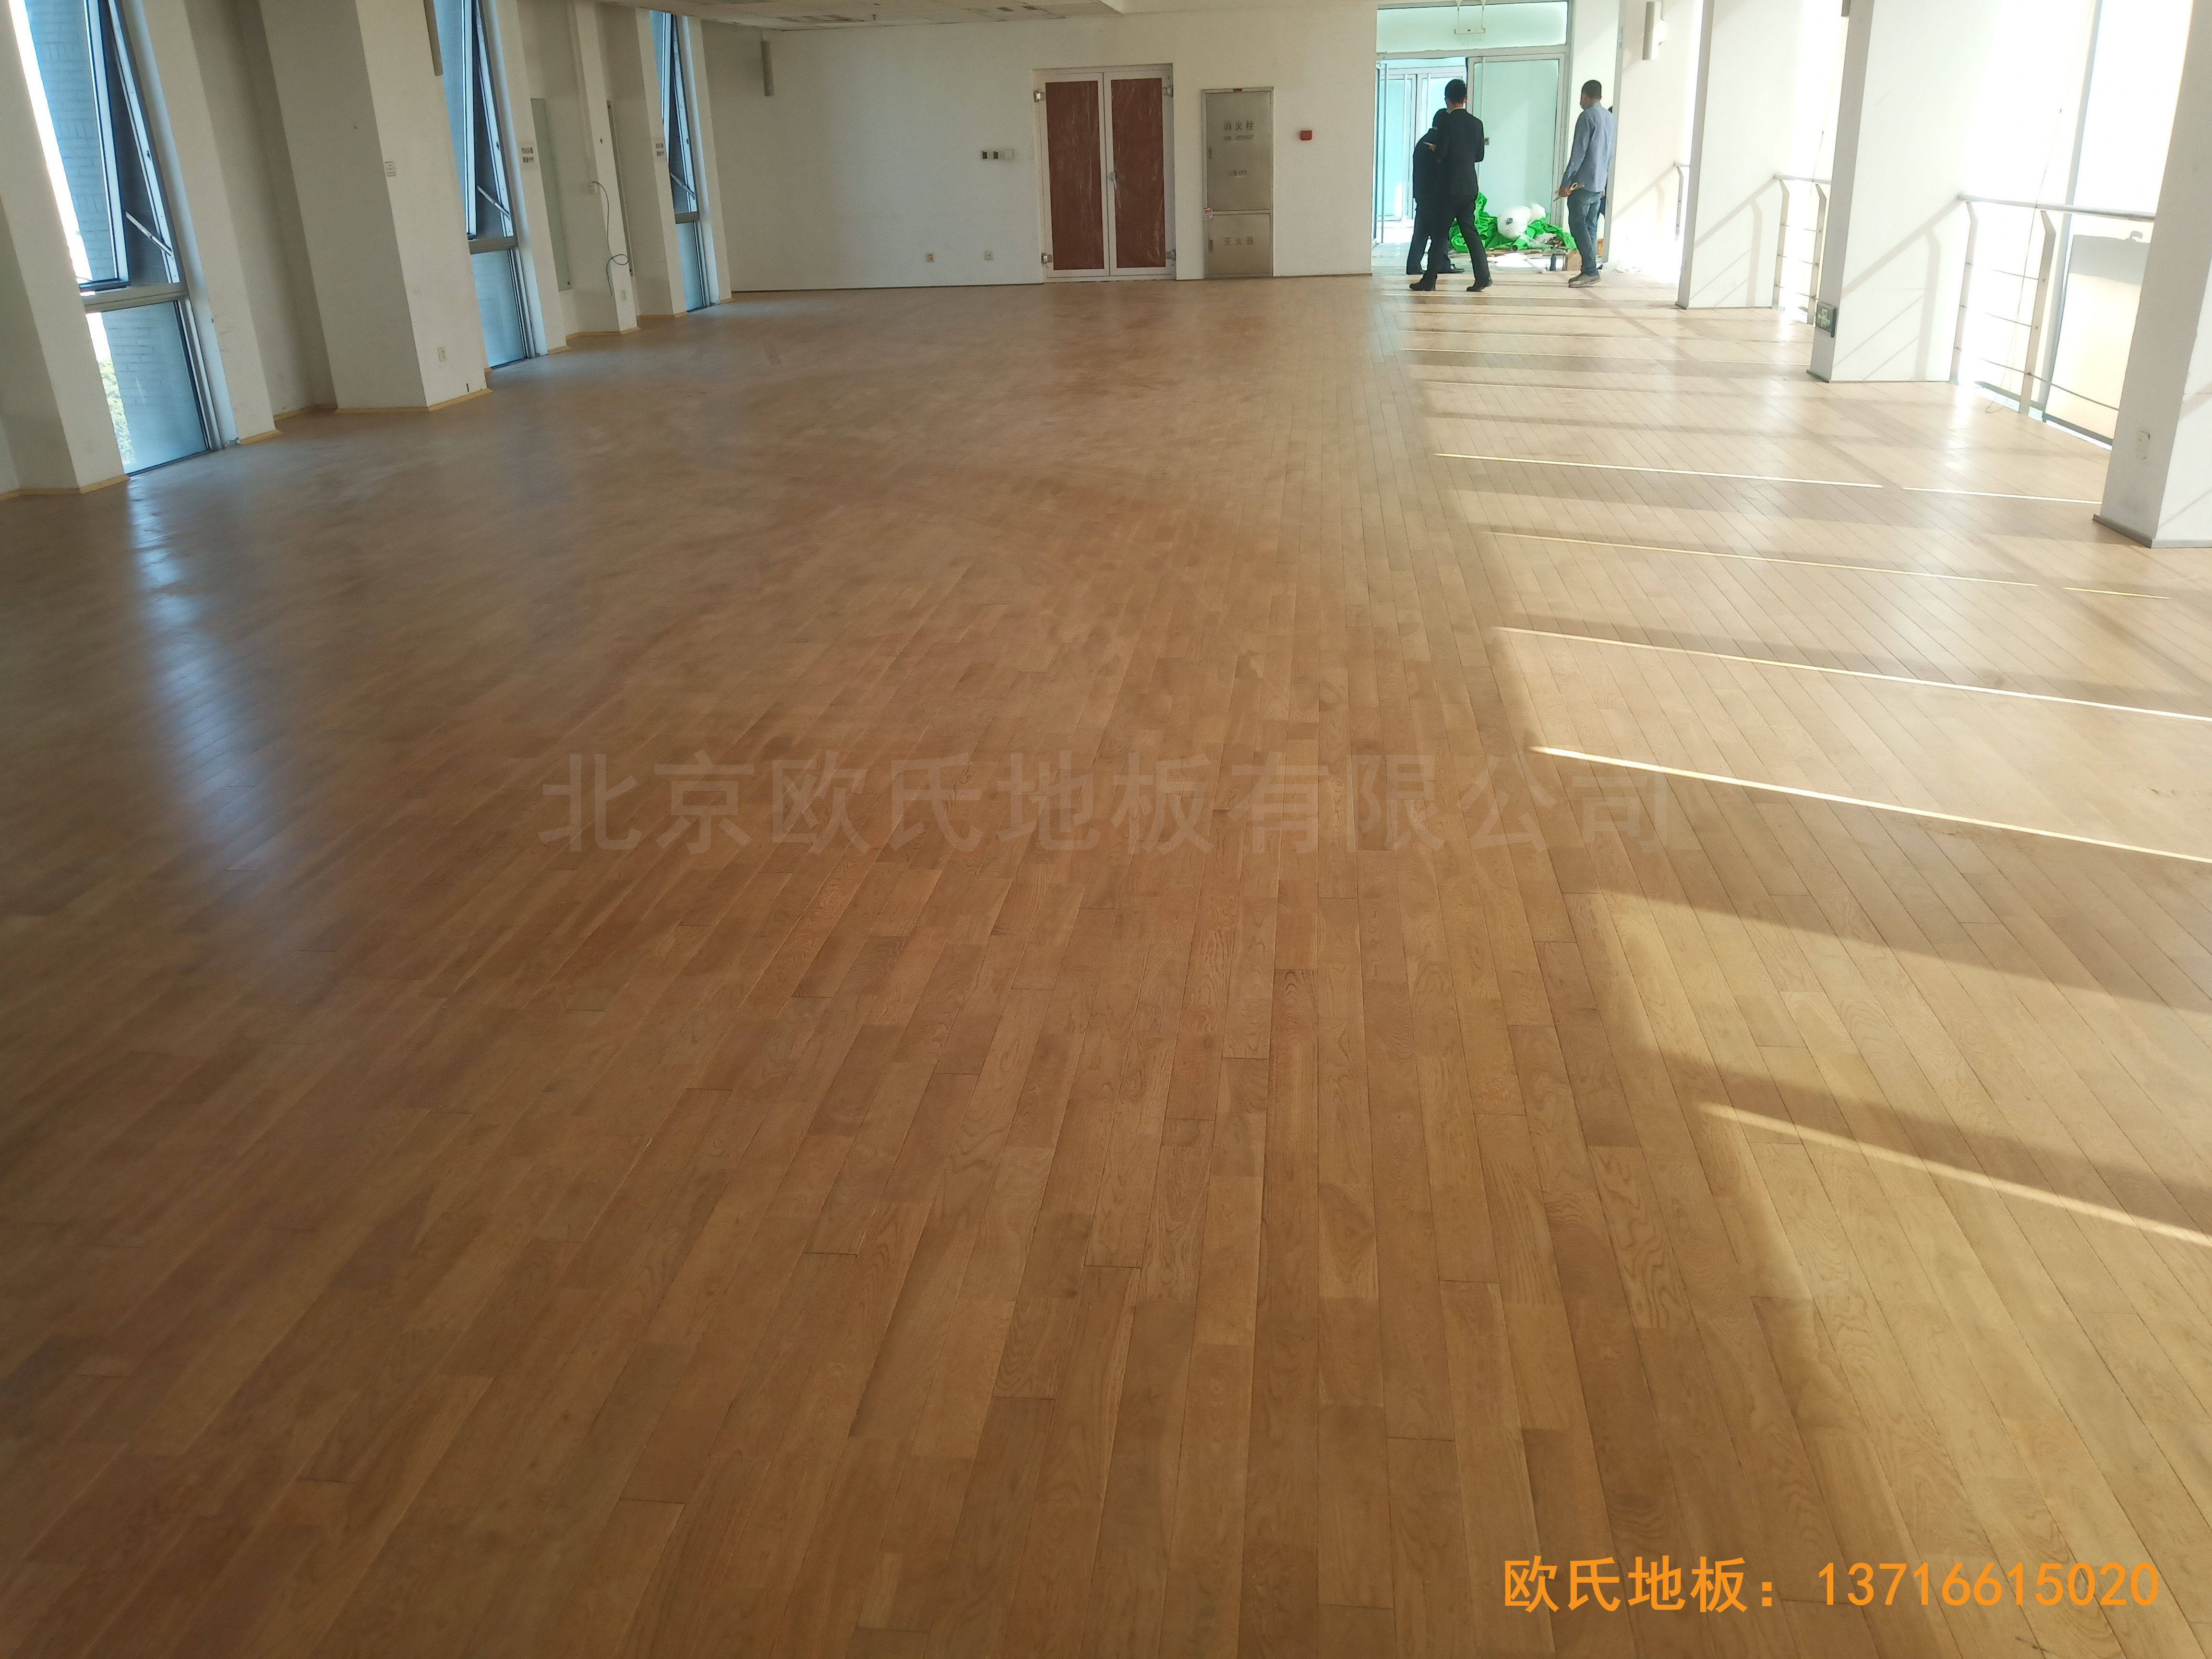 中国科学院技术研究所运动馆体育木地板铺装案例5